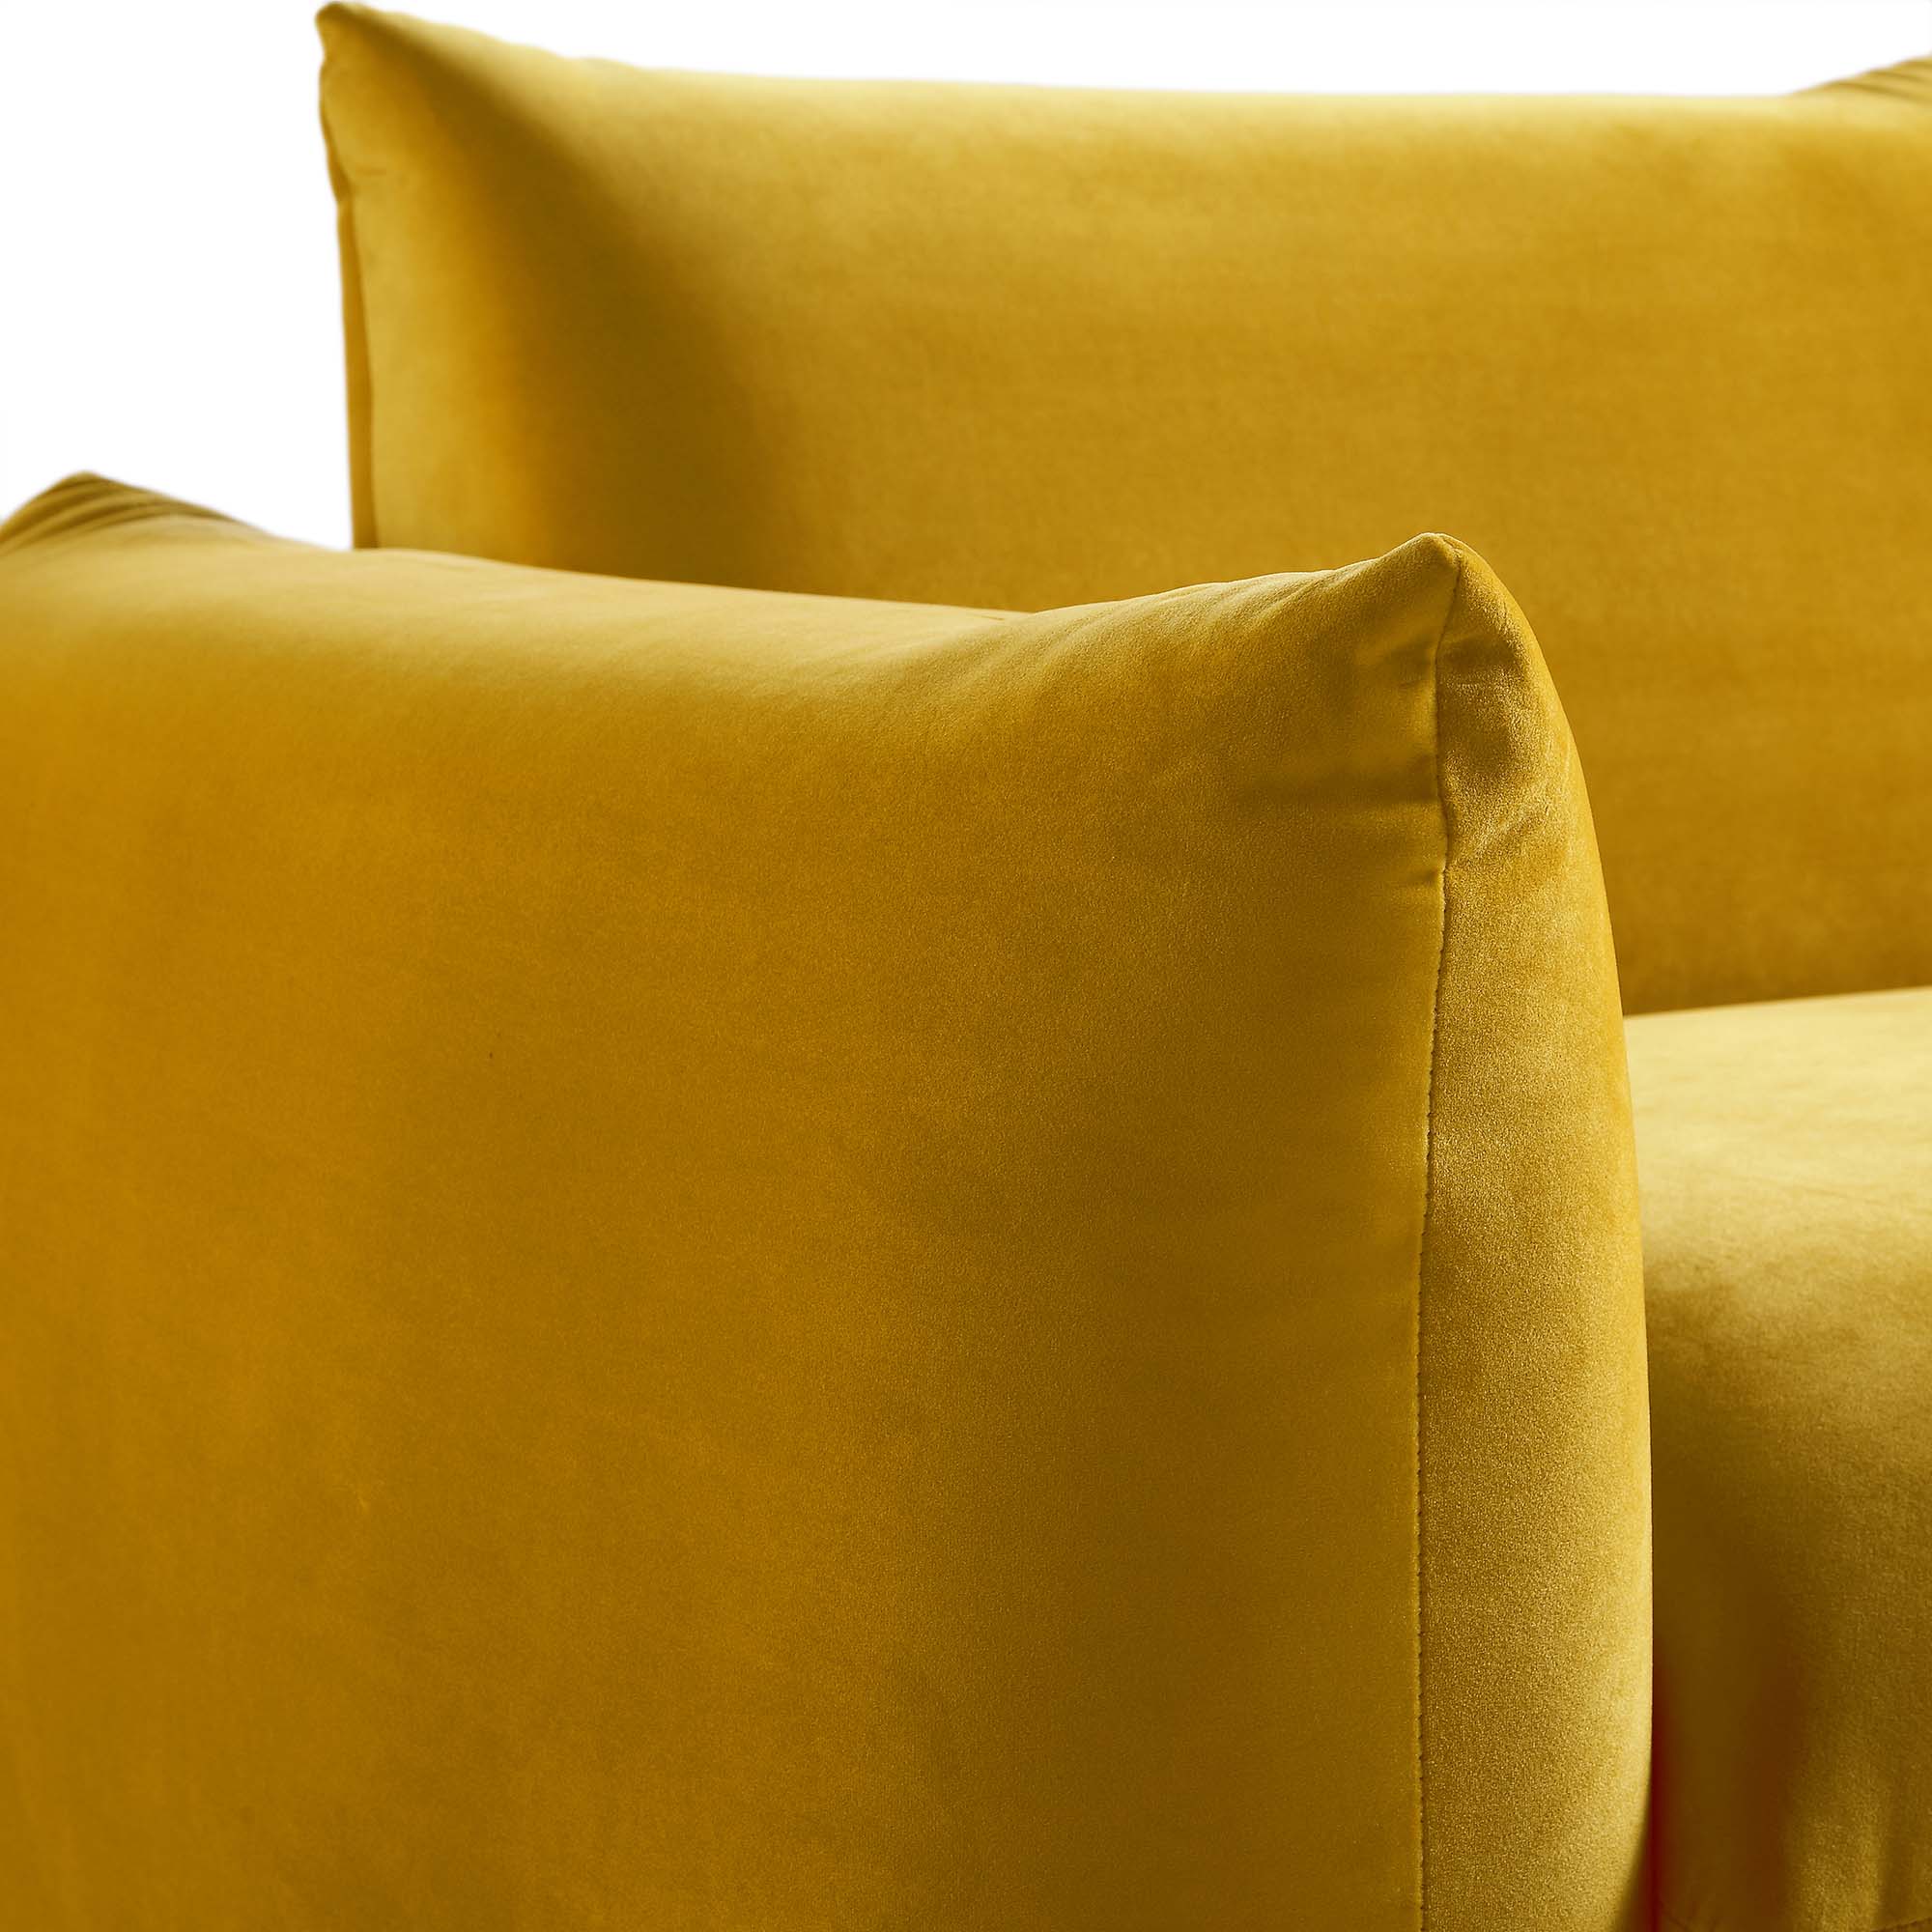 Gianni Three Seater Sofa, Goldenrod Velvet